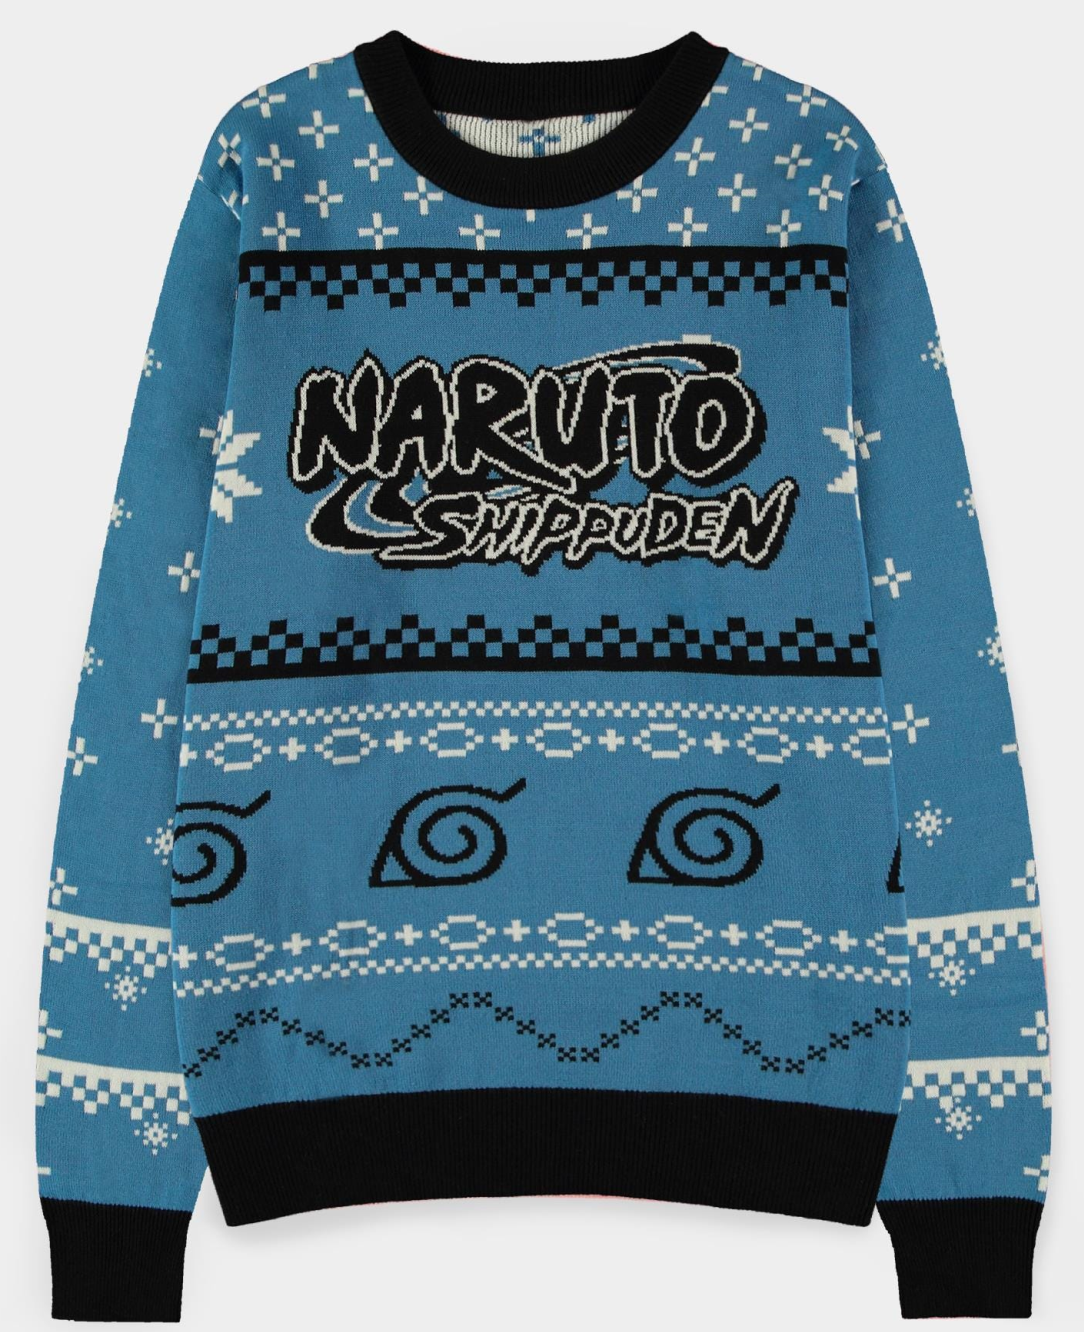 Abbigliamento Naruto Shippuden: Christmas Jumper Multicolor (Maglione Unisex Tg. XL) NUOVO SIGILLATO, EDIZIONE DEL 25/04/2022 SUBITO DISPONIBILE